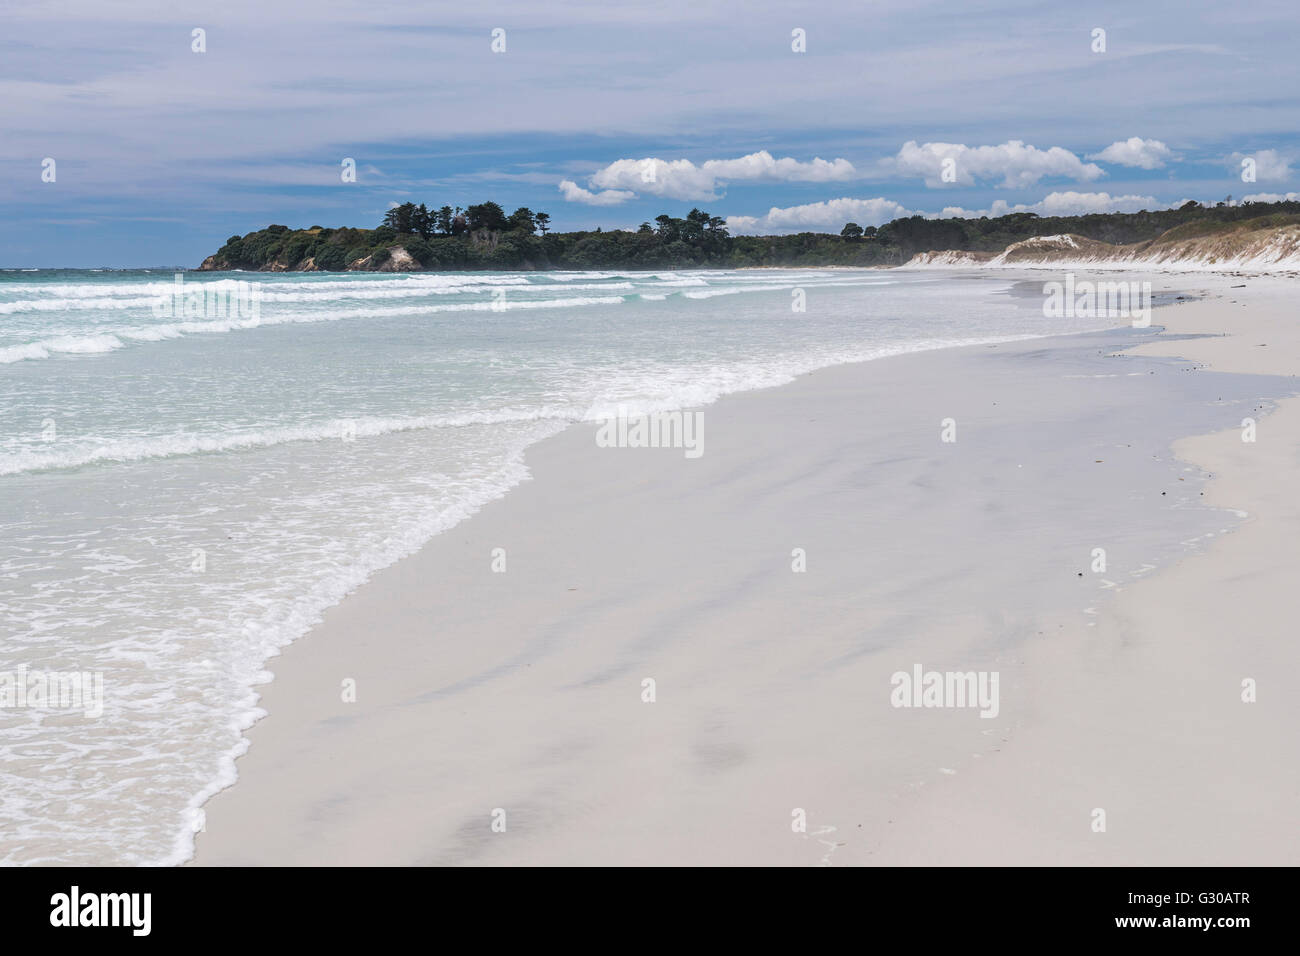 Plage Rarawa, populaire et très belle plage de sable blanc dans la région de Northland, île du Nord, Nouvelle-Zélande, Pacifique Banque D'Images